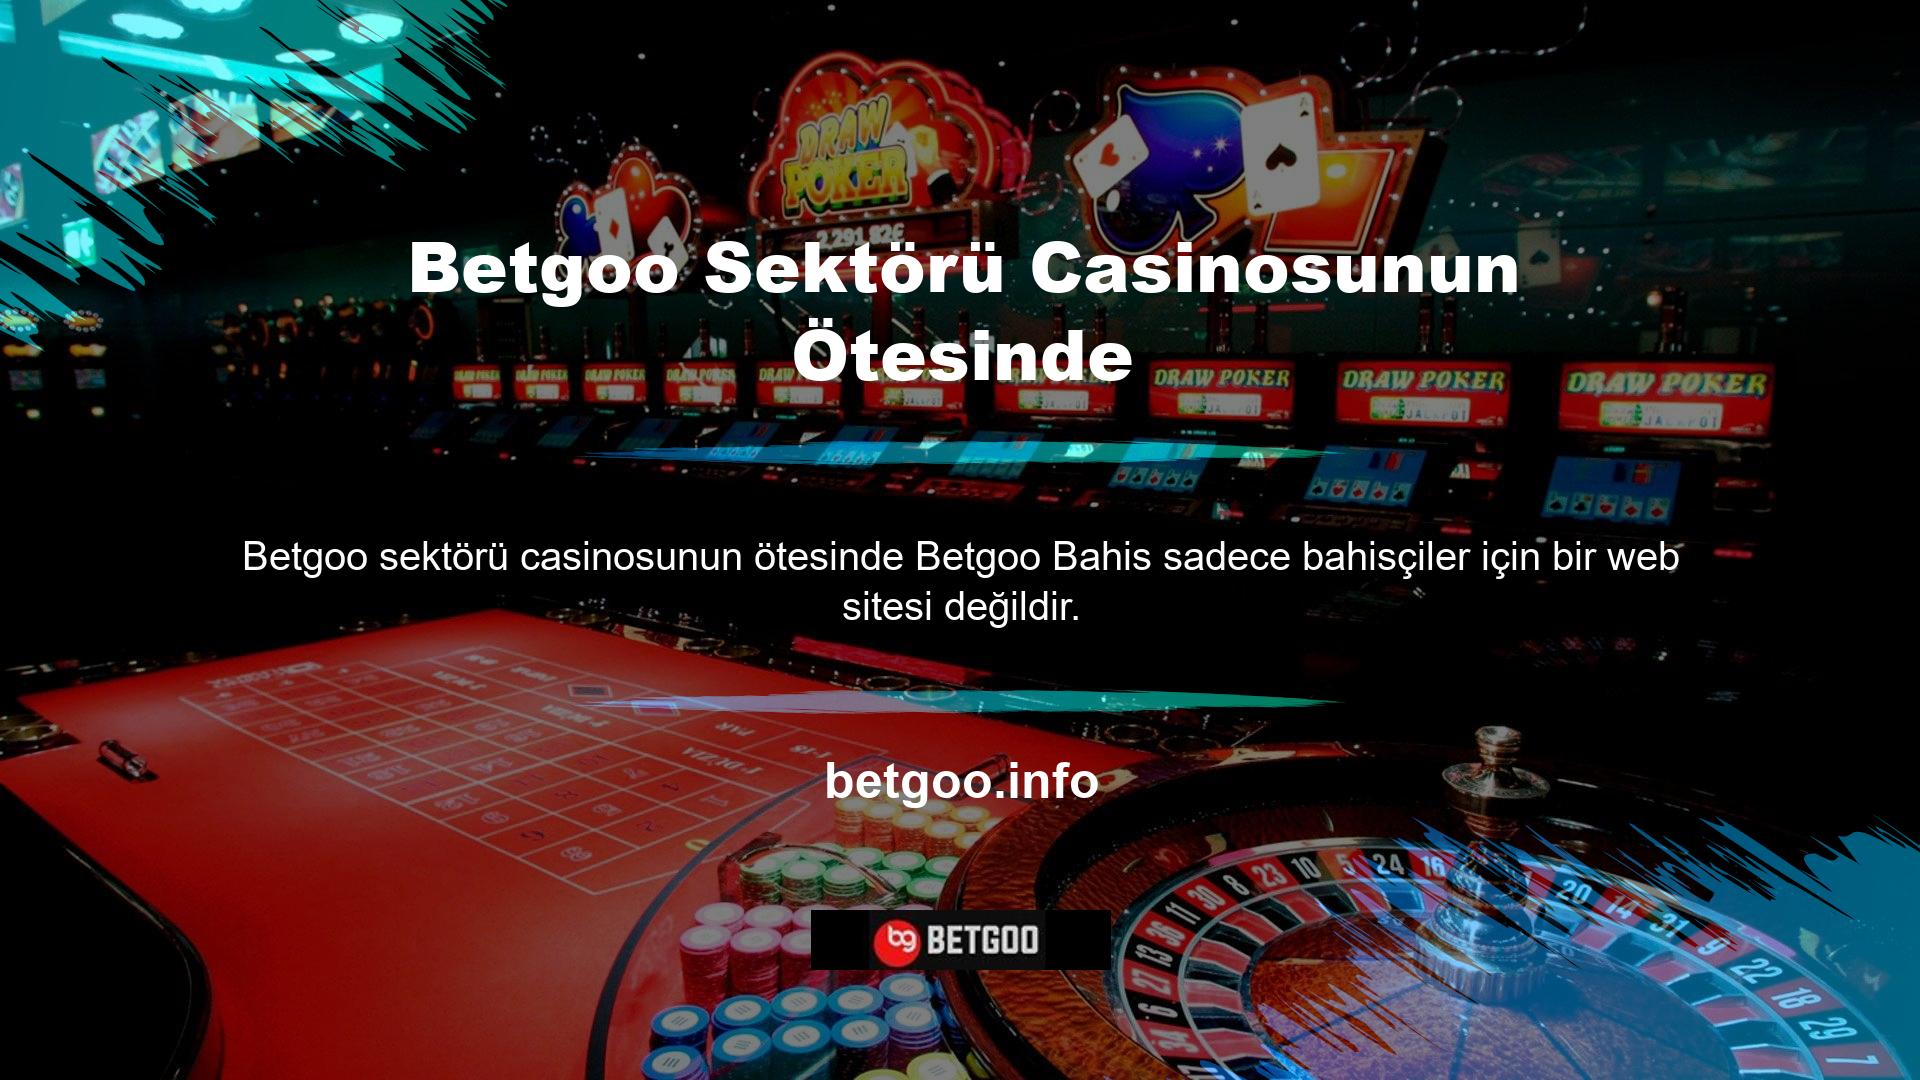 Casino oyuncuları, bingo oyuncuları, slot makinesi oyuncuları da bu sitede vakit geçirebilirler